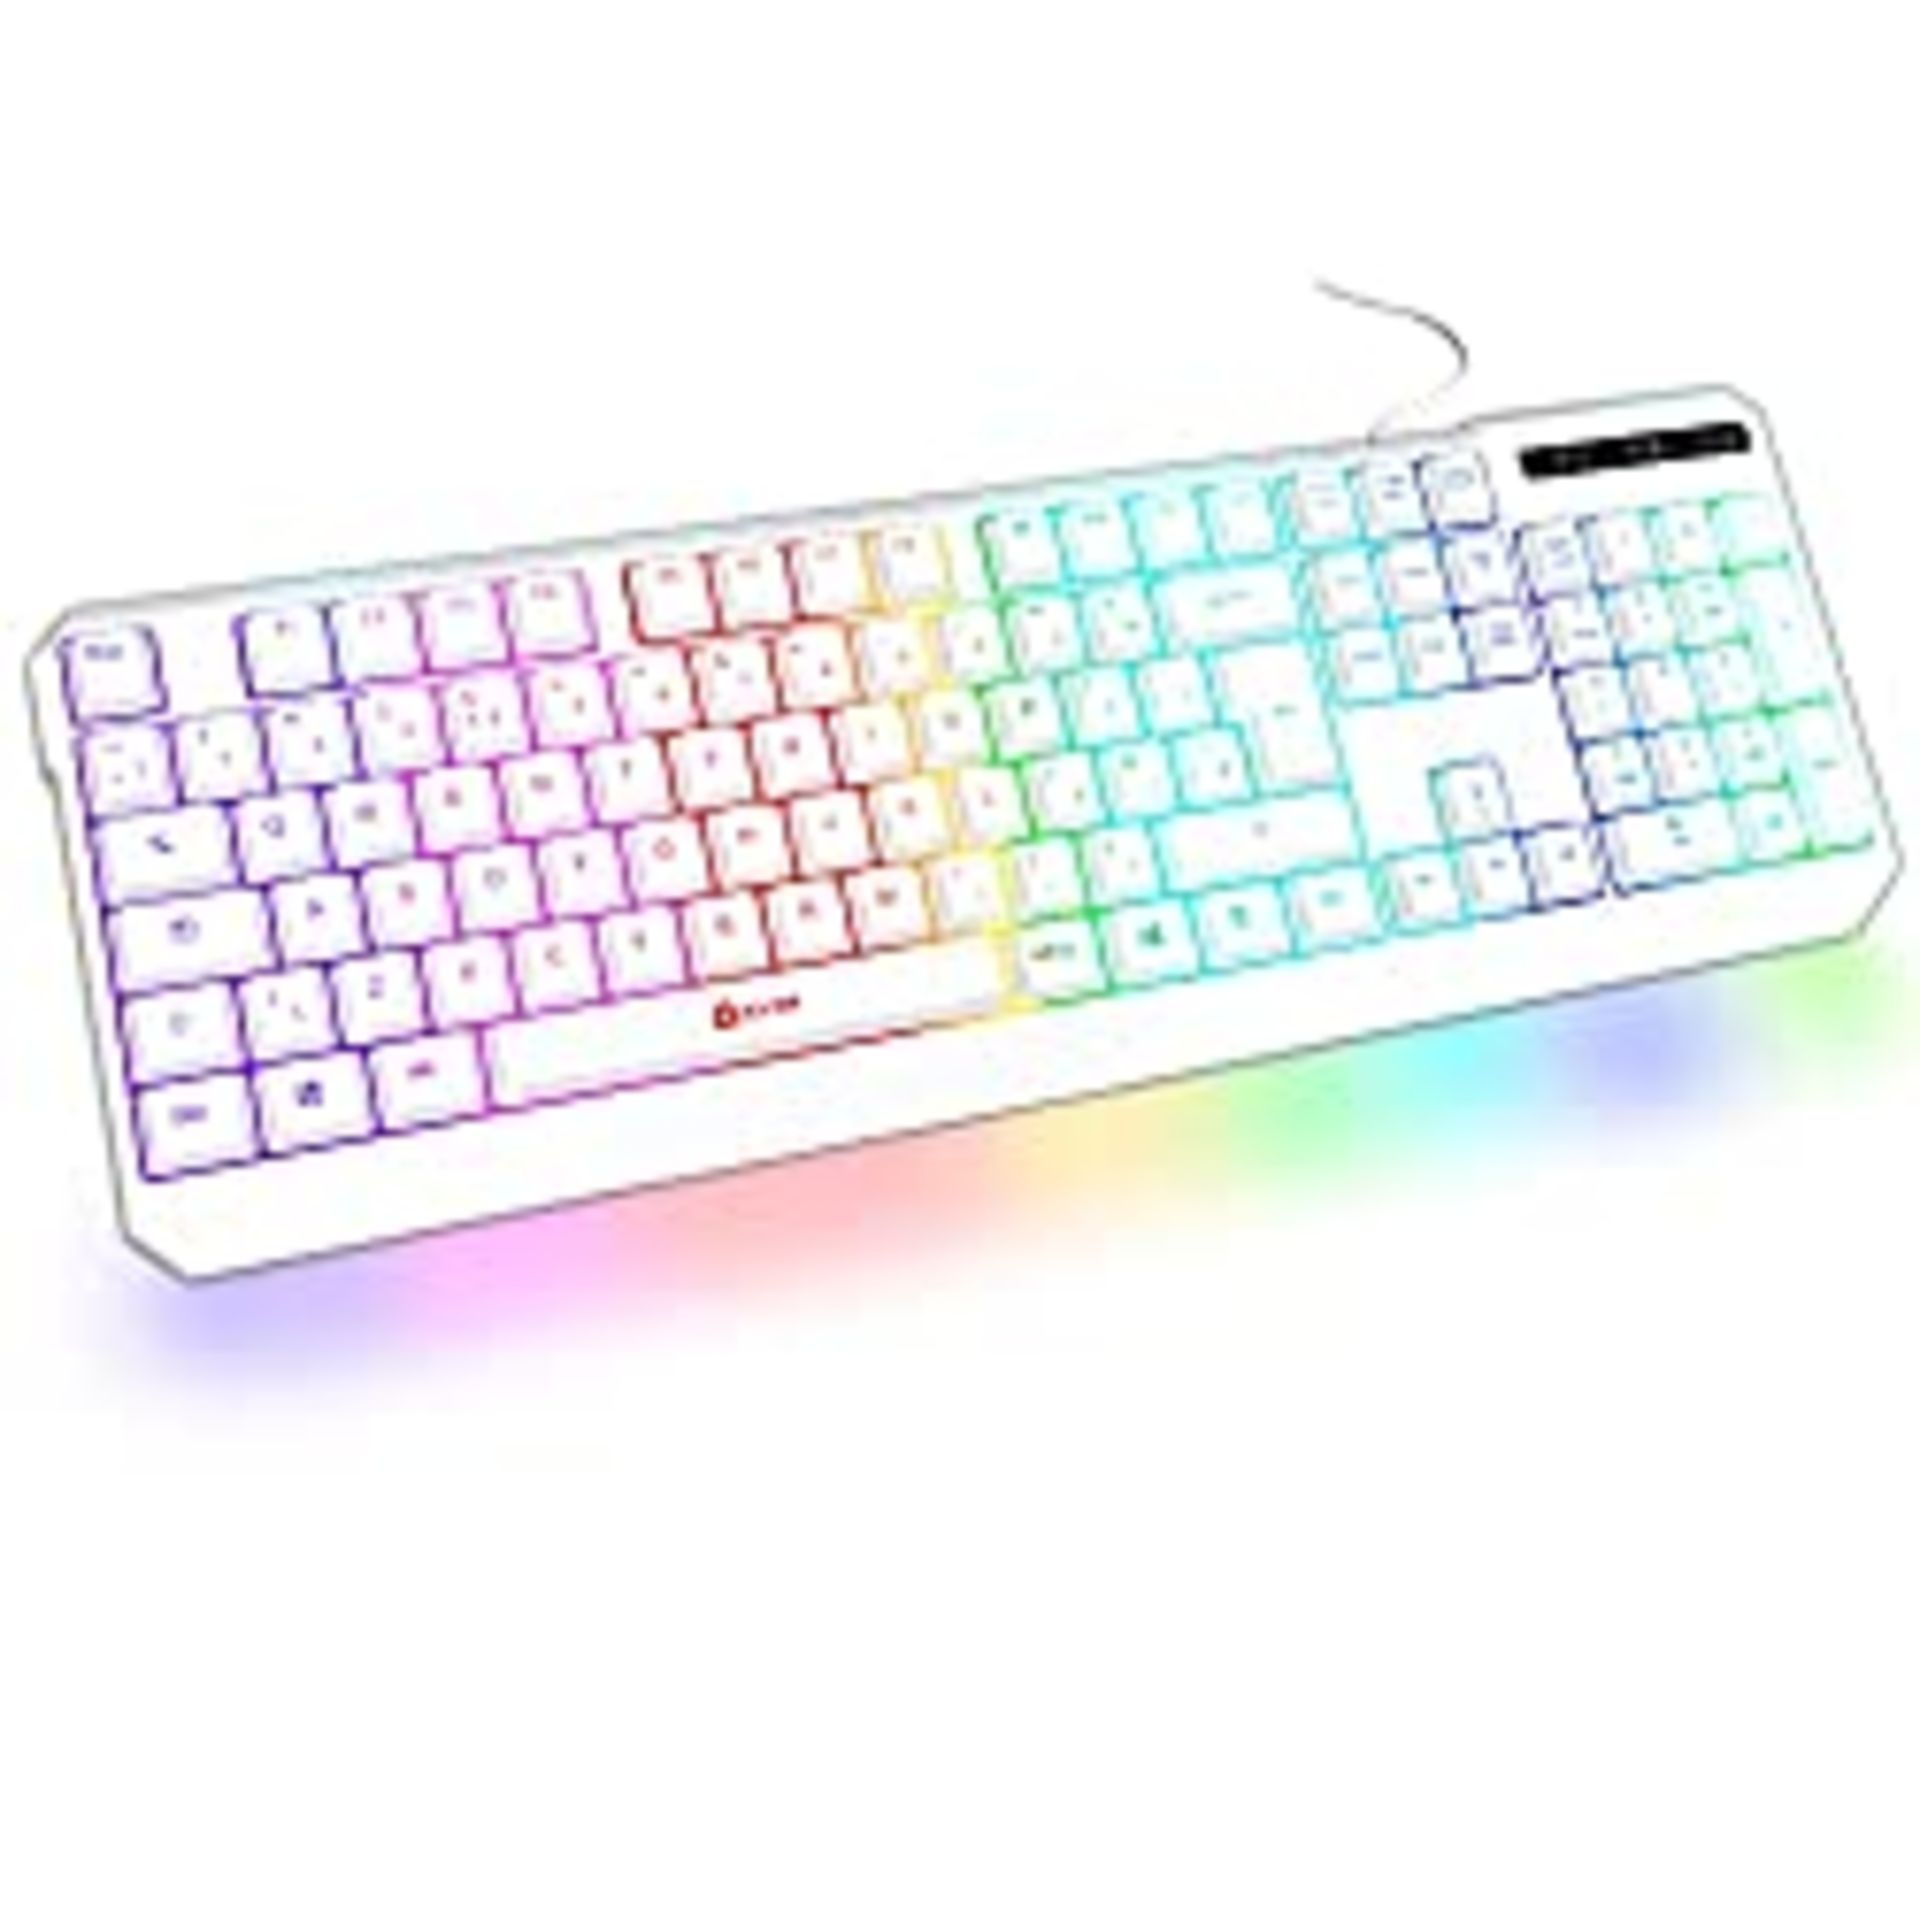 RRP £27.89 KLIM Chroma Gaming Keyboard Wired USB